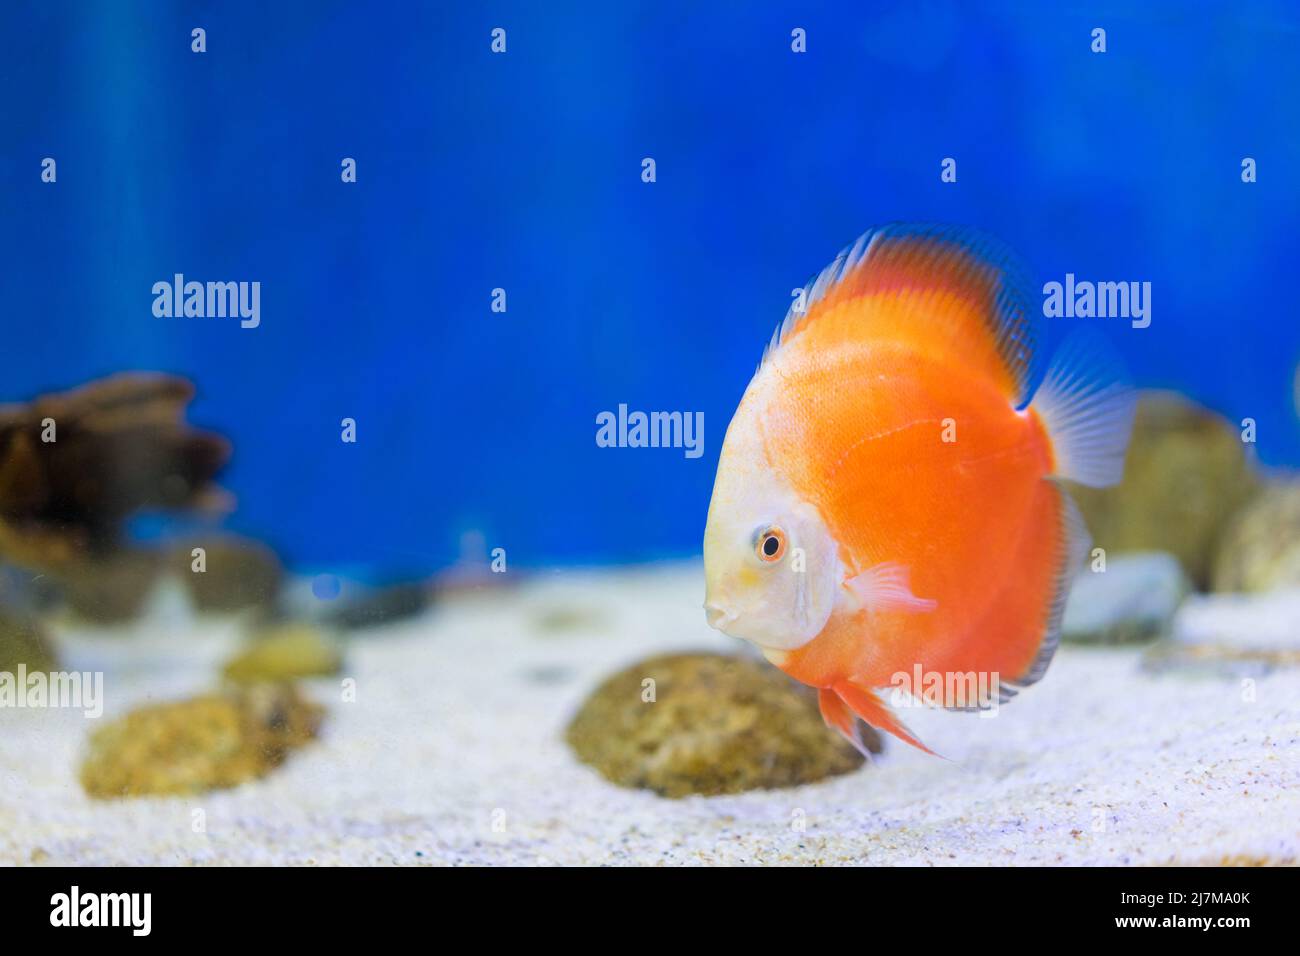 Tank fish in aquarium Stock Photo